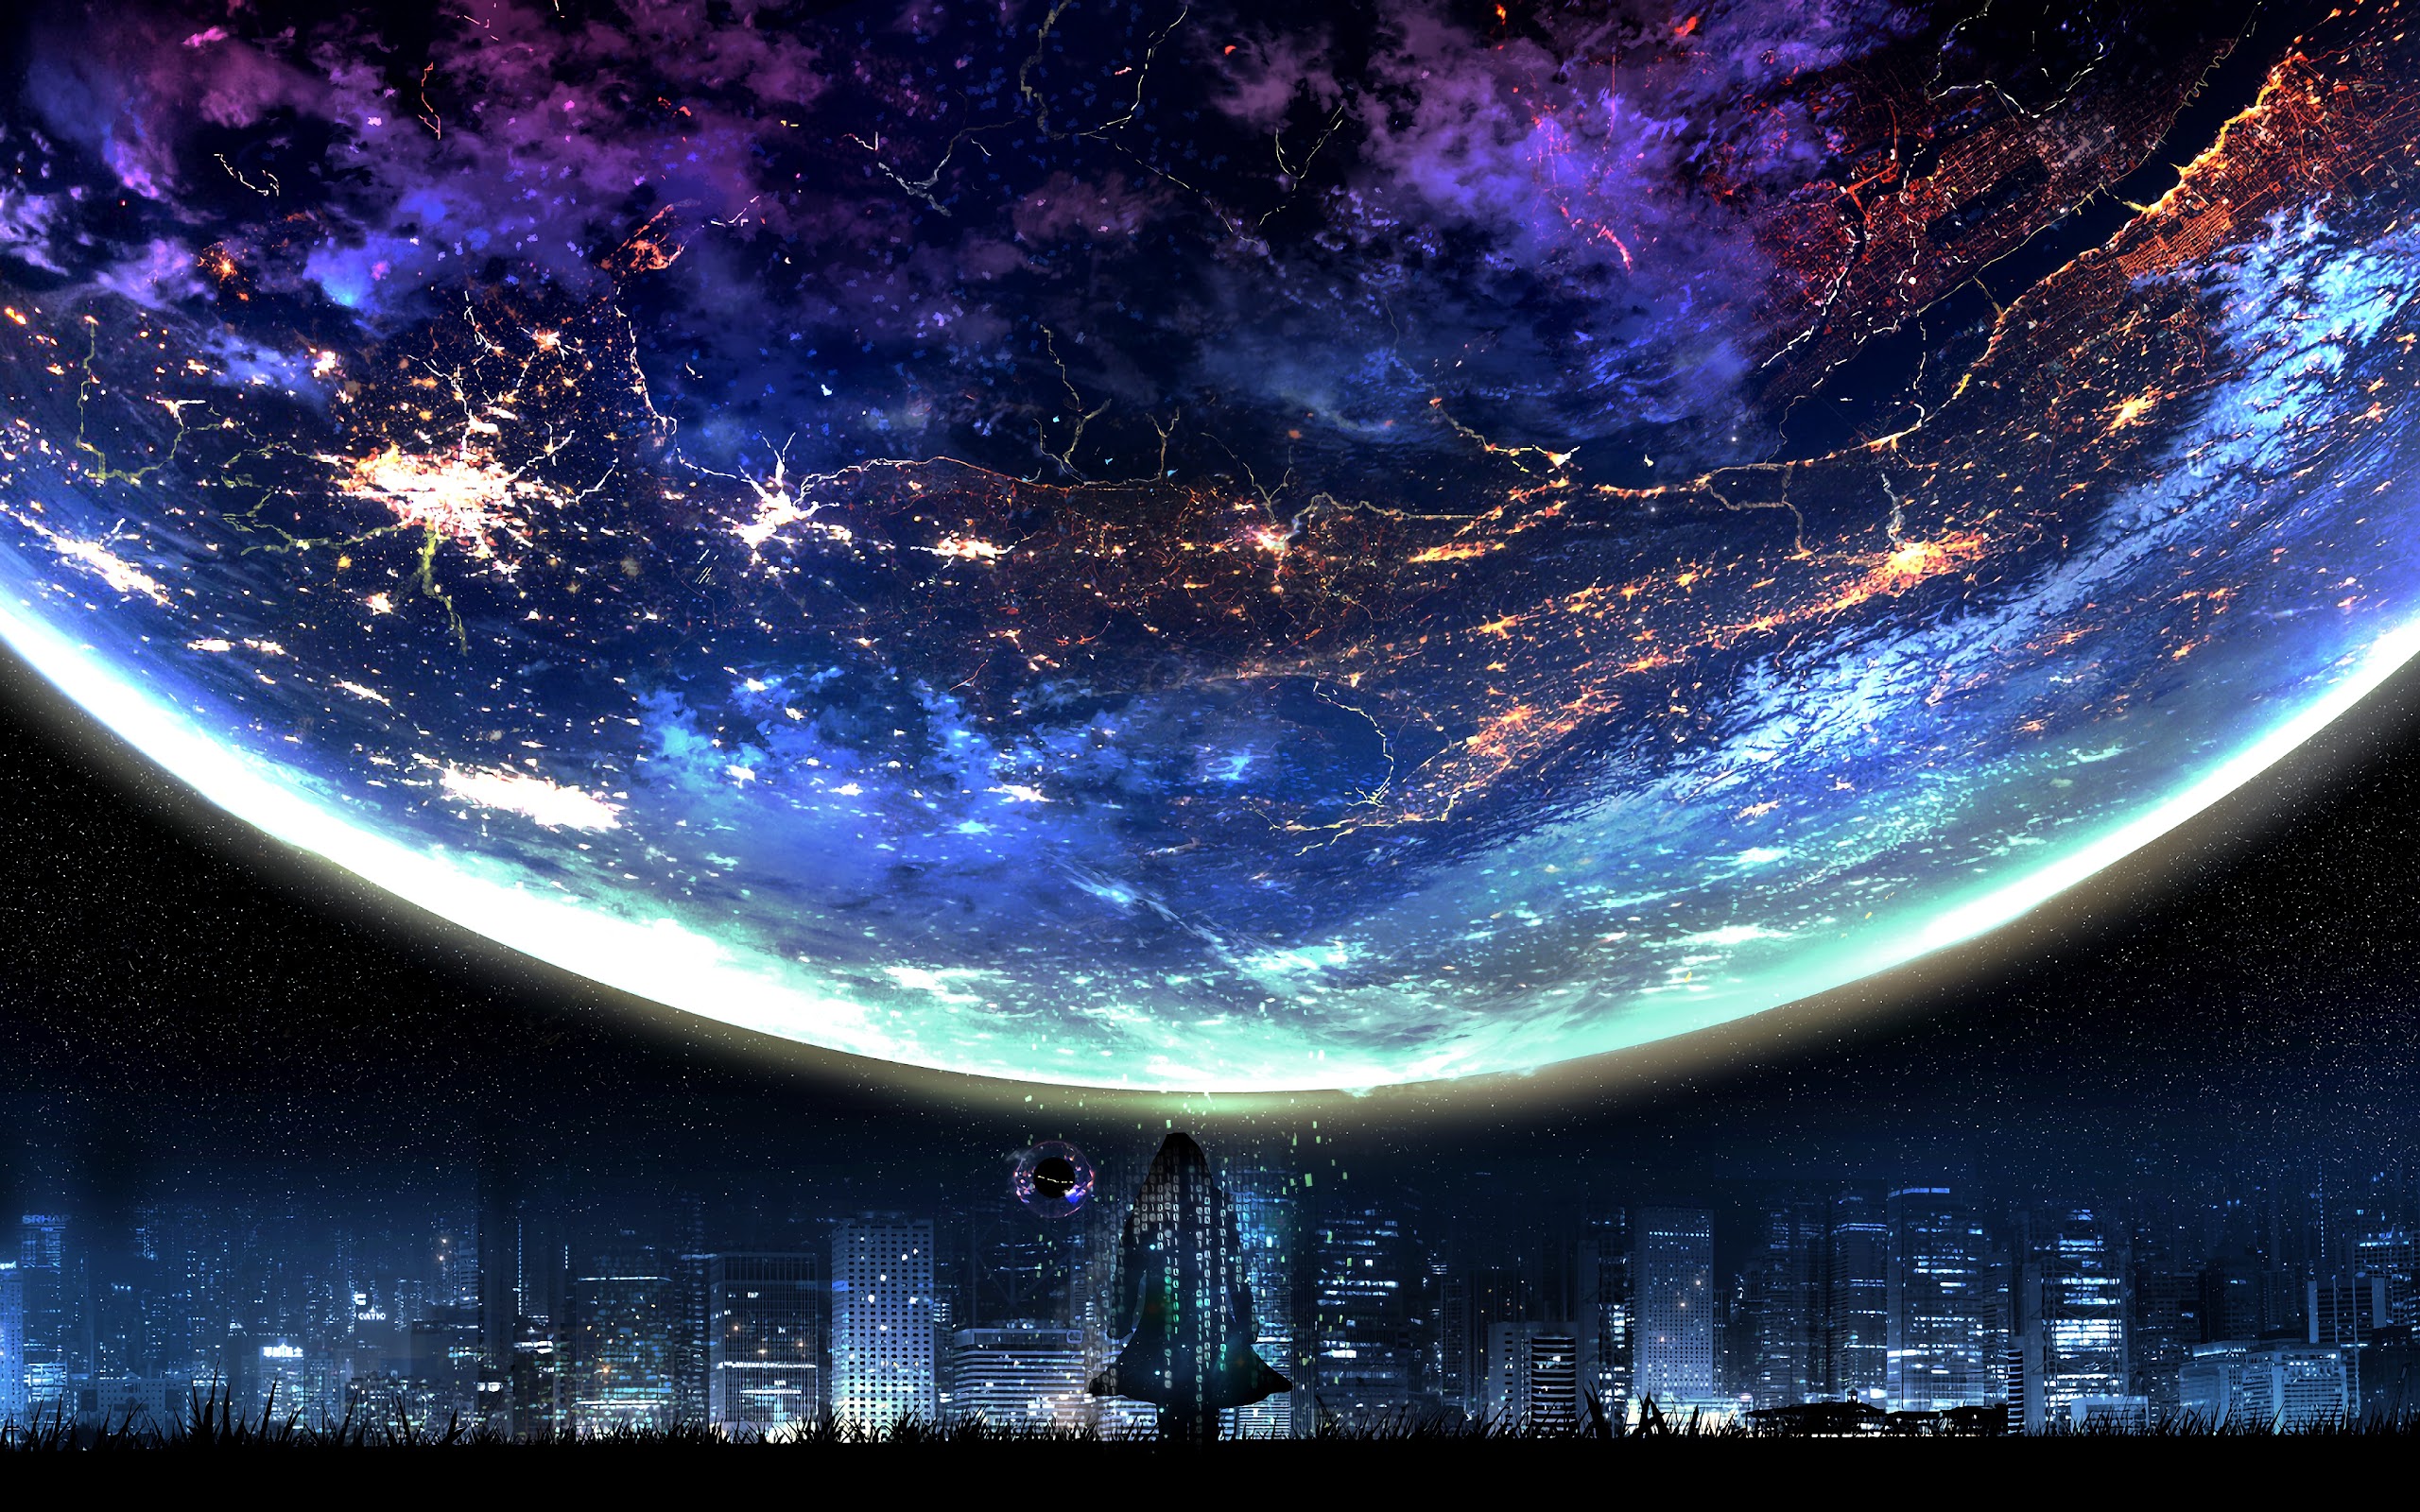 Bộ Sưu Tập Hình Nền Desktop Background 4k Anime Chất Lượng Cao Nhất